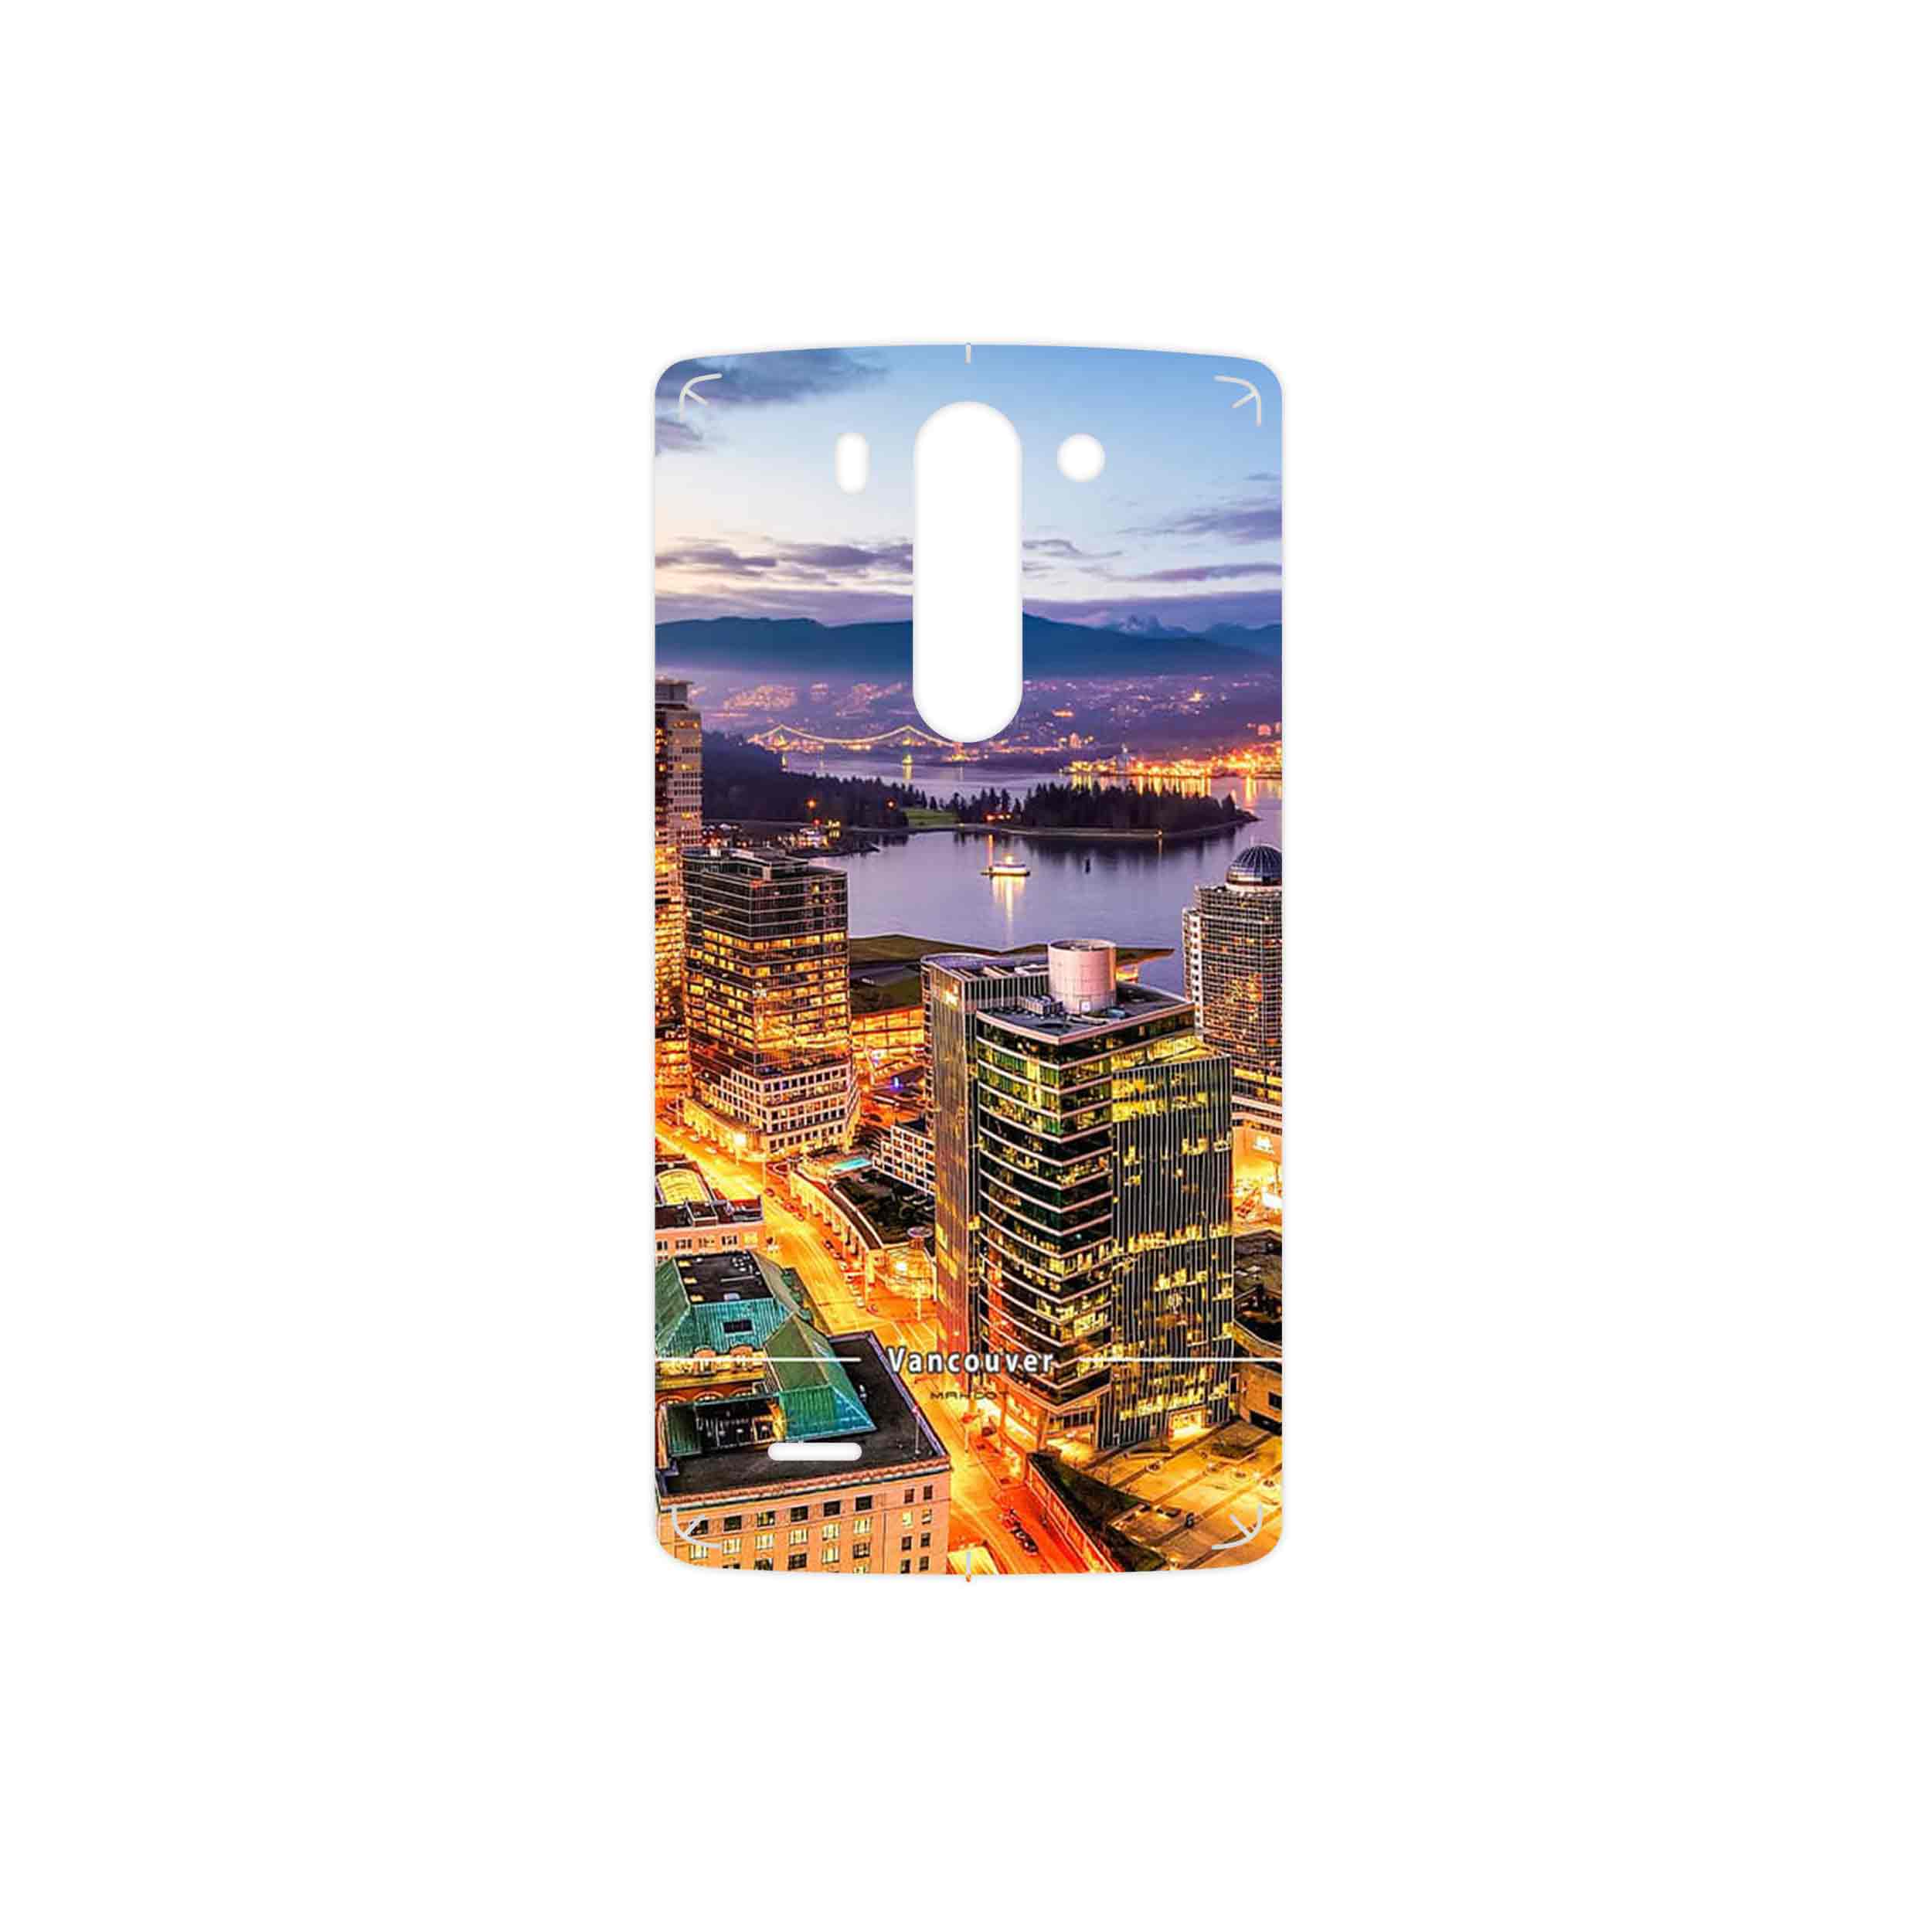 برچسب پوششی ماهوت مدل City of Vancouver مناسب برای گوشی موبایل ال جی G3 Beat